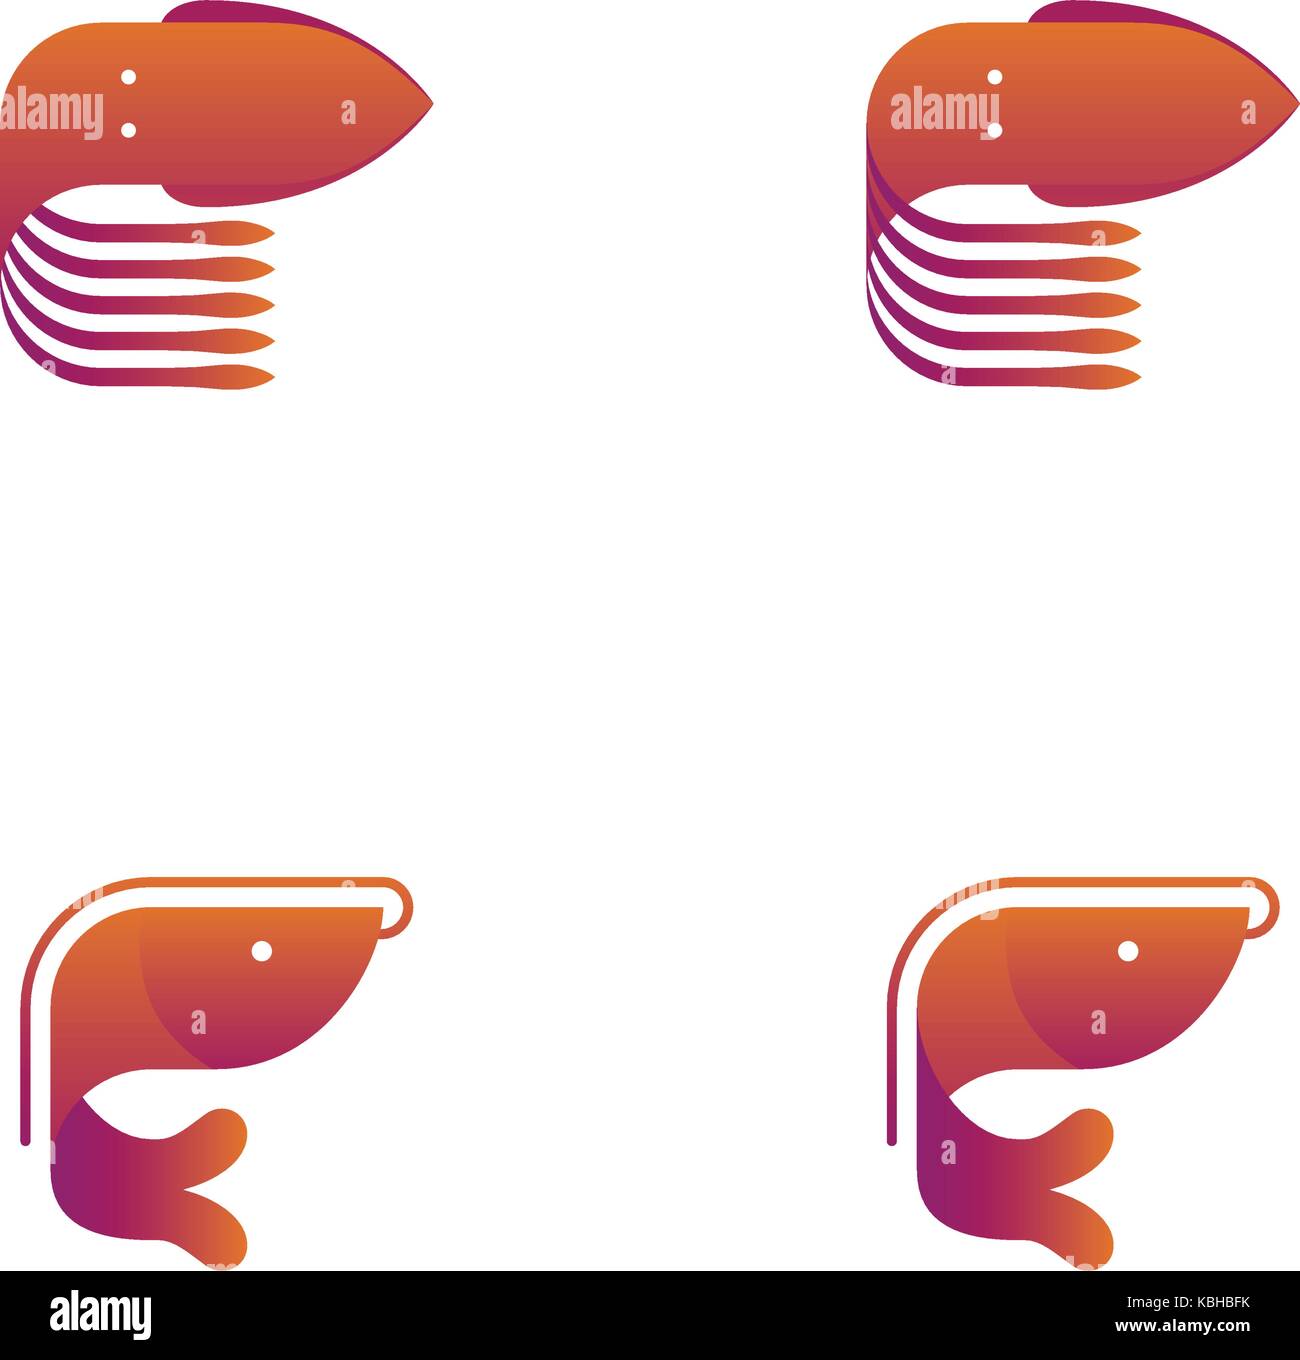 Gamberetti e calamari simbolo icon set orange gradiente viola color design illustrazione isolati su sfondo bianco, vettoriale EPS10 Illustrazione Vettoriale